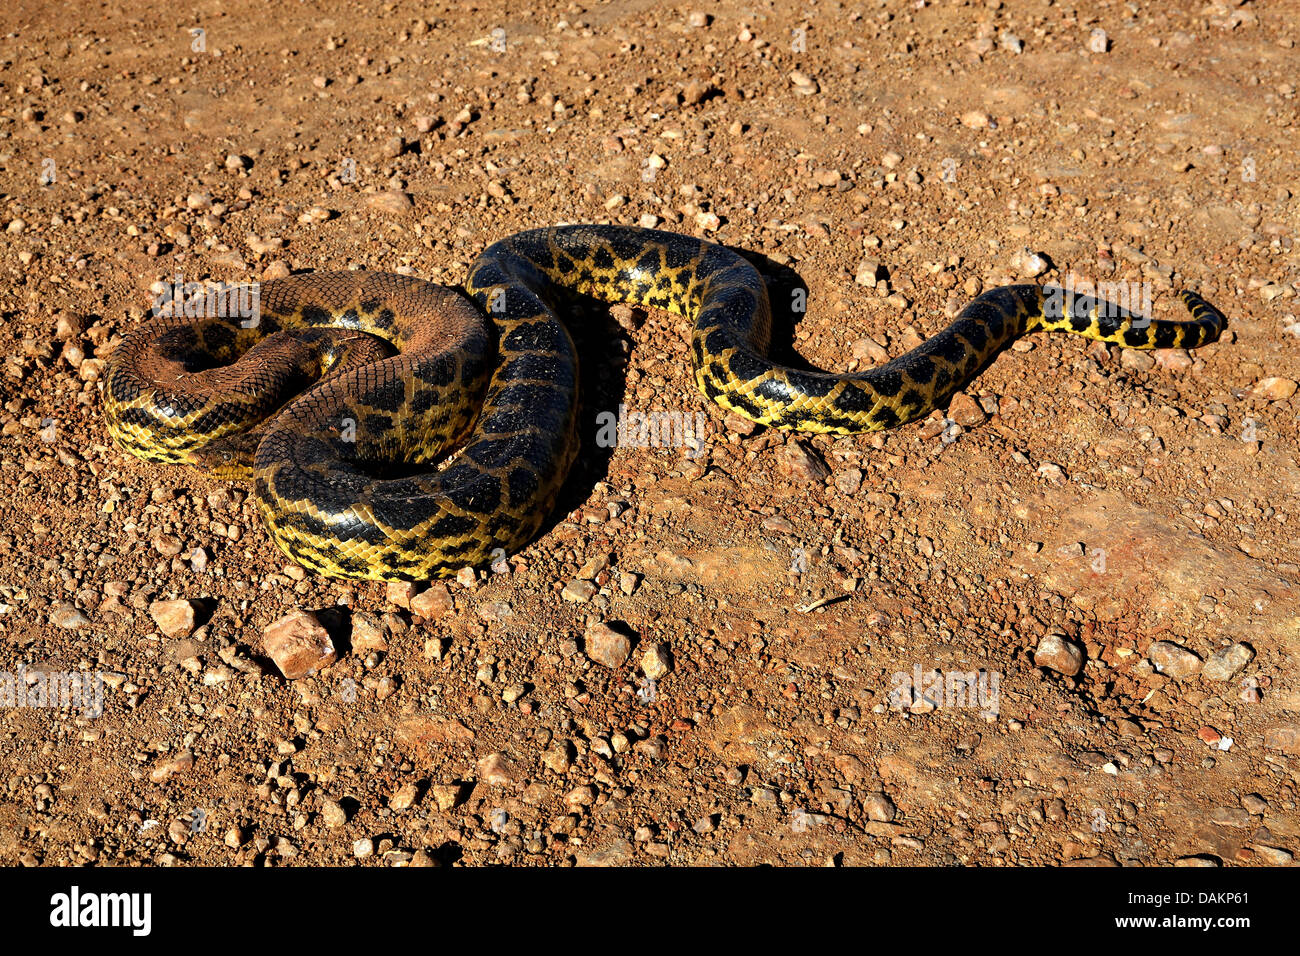 Anaconda jaune (Eunectes notaeus), l'enroulement sur le terrain, en Amérique du Sud, Brésil, Mato Grosso do Sul Banque D'Images